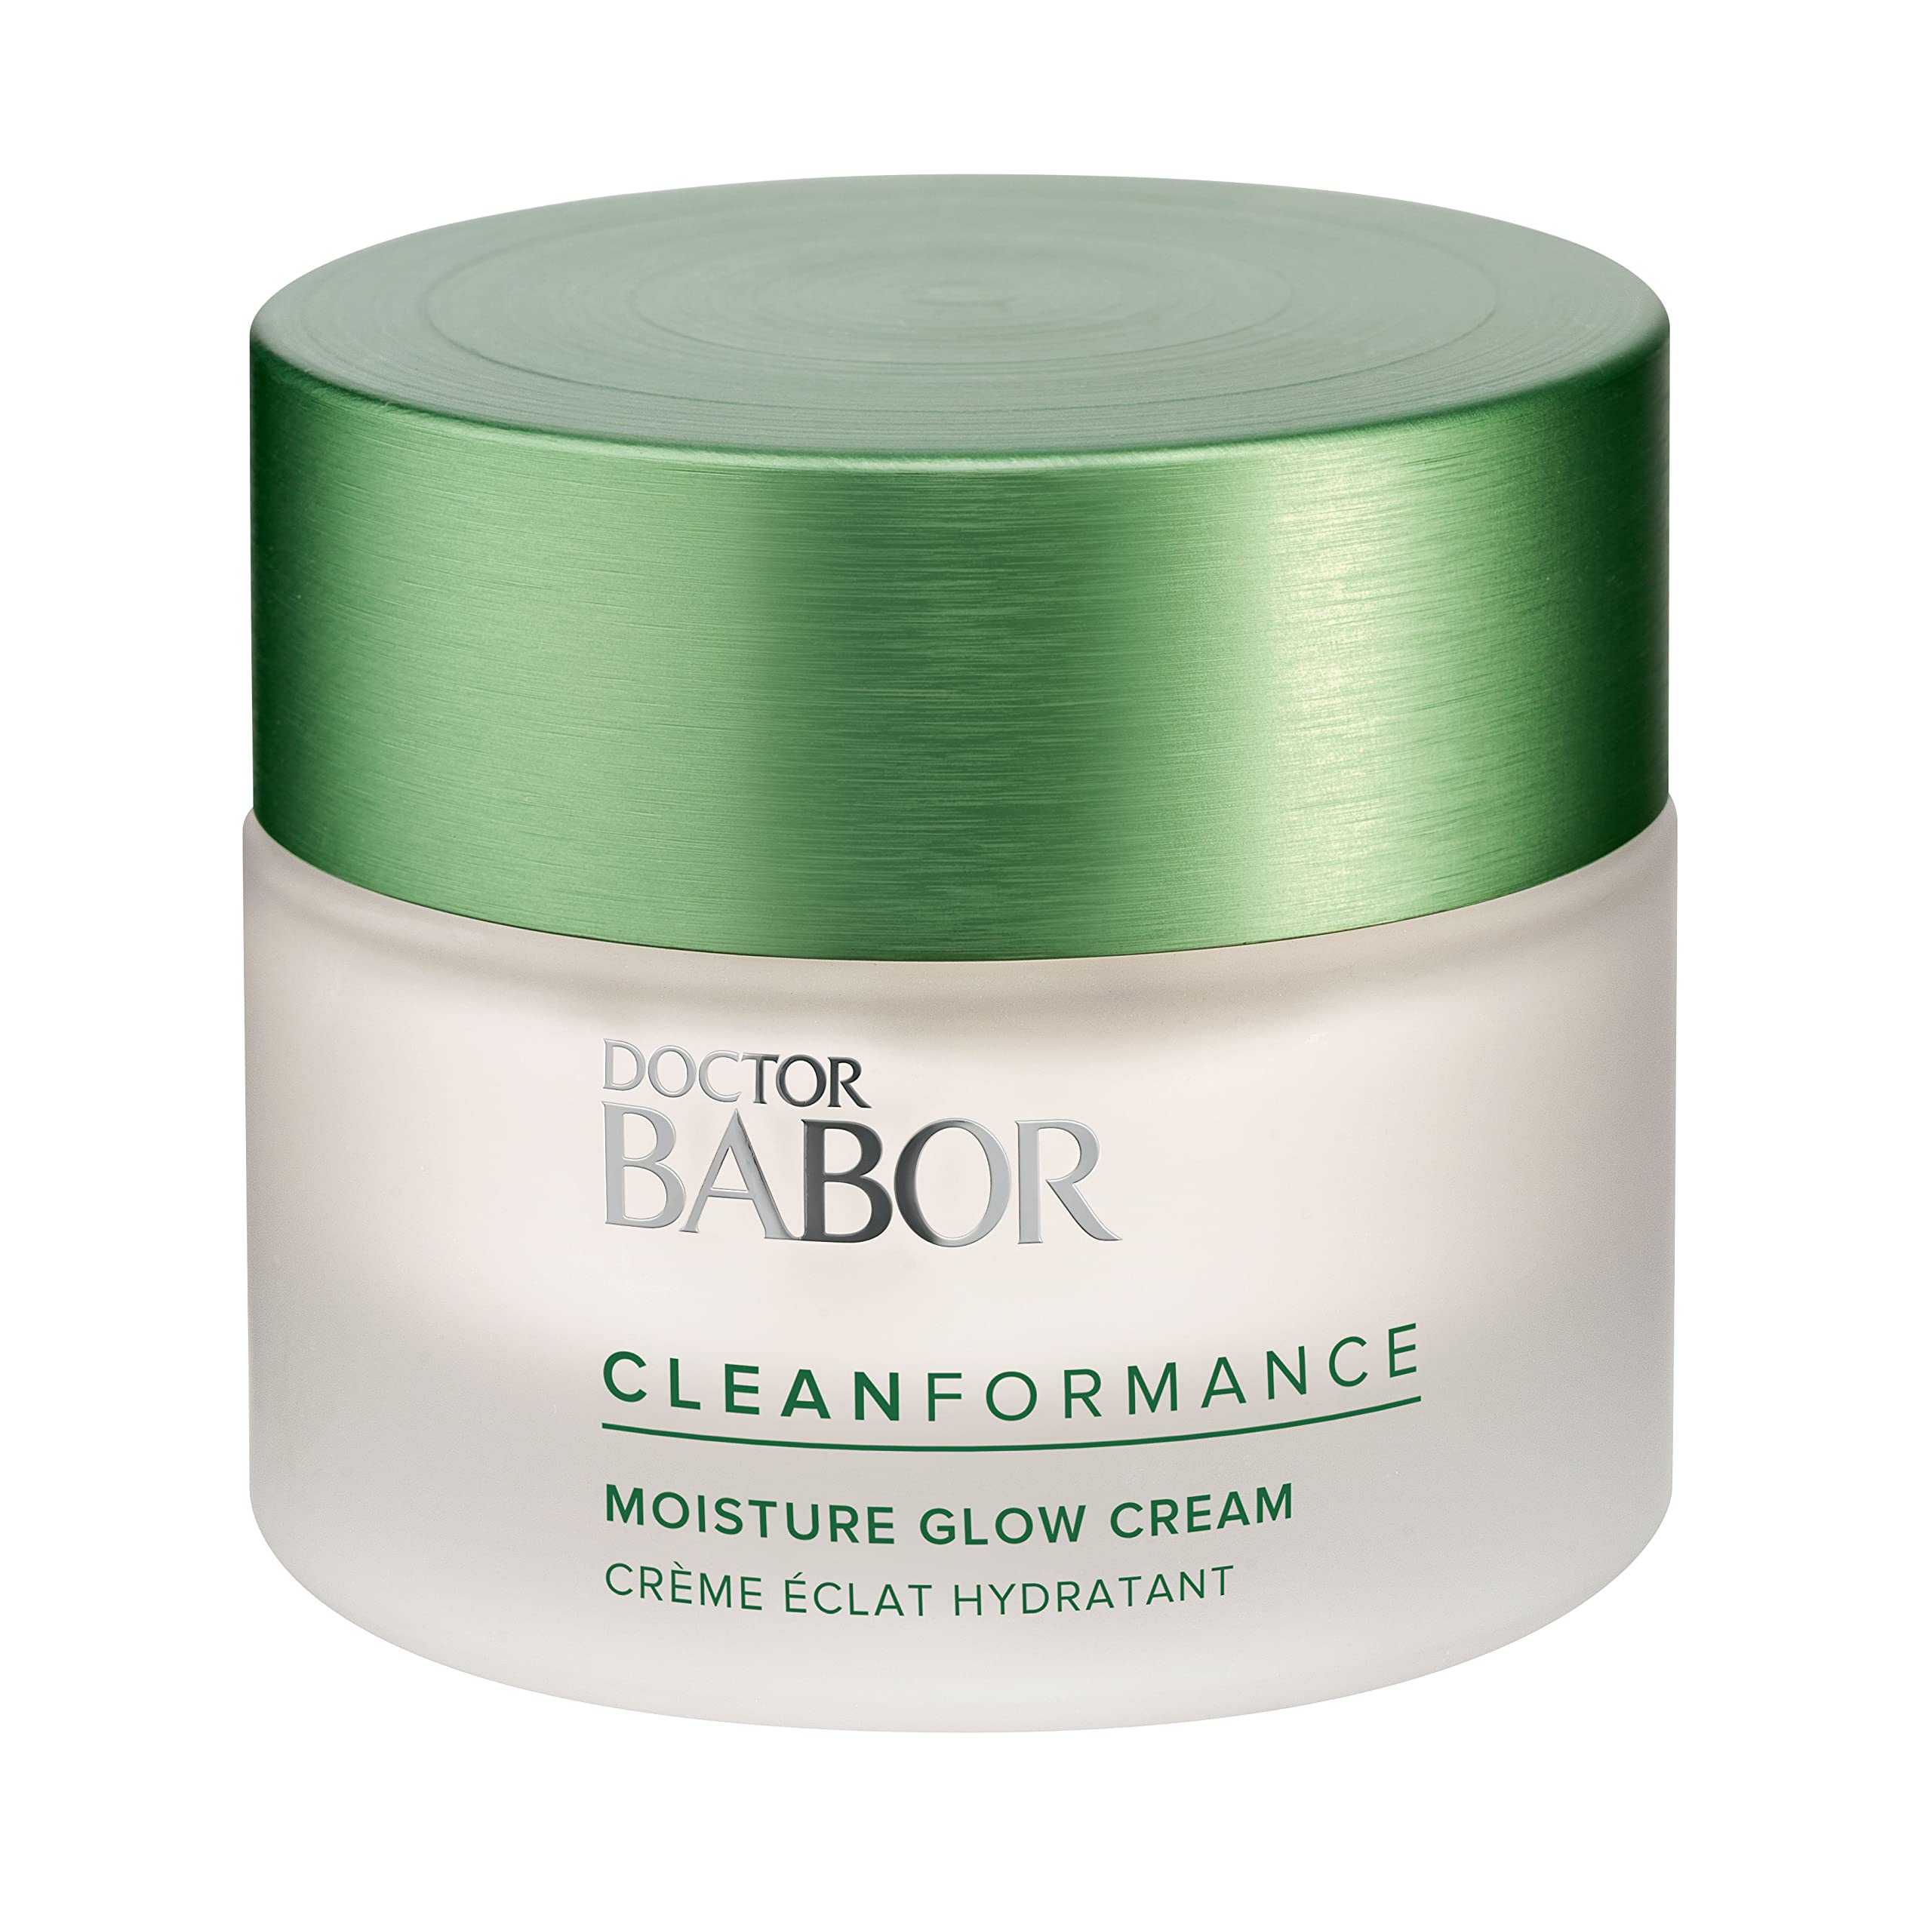 DOCTOR BABOR CLEANFORMANCE Gesichtscreme für trockene Haut, Feuchtigkeitscreme mit Vitamin E, Vegane Formel, Moisture Glow Cream, 1 x 50 ml